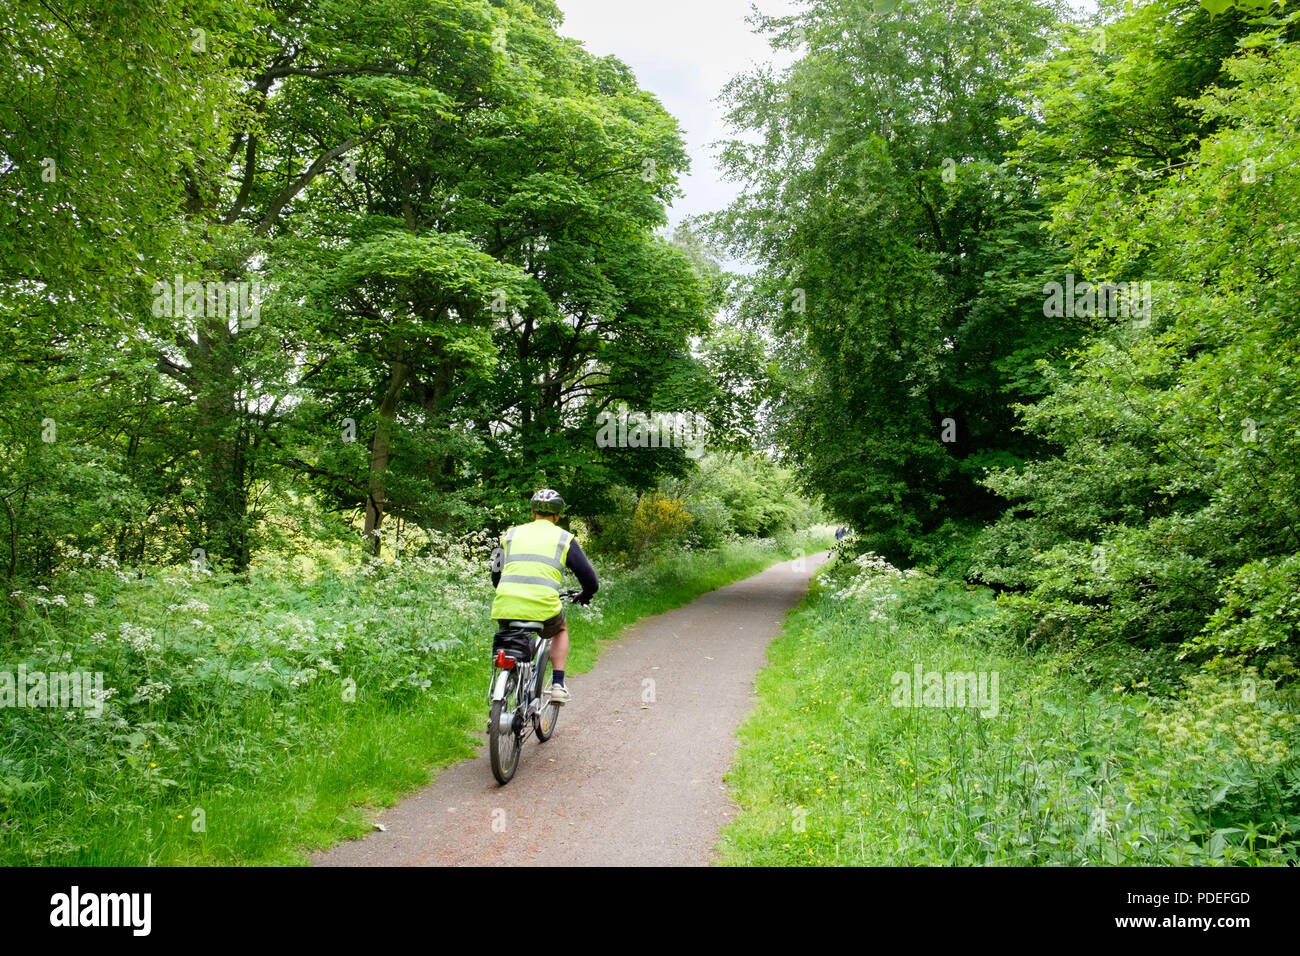 Un cycliste sur le chemin de fer Waskerley Way dans le comté de Durham, une partie de l'Byway National cycling route en Angleterre. Banque D'Images